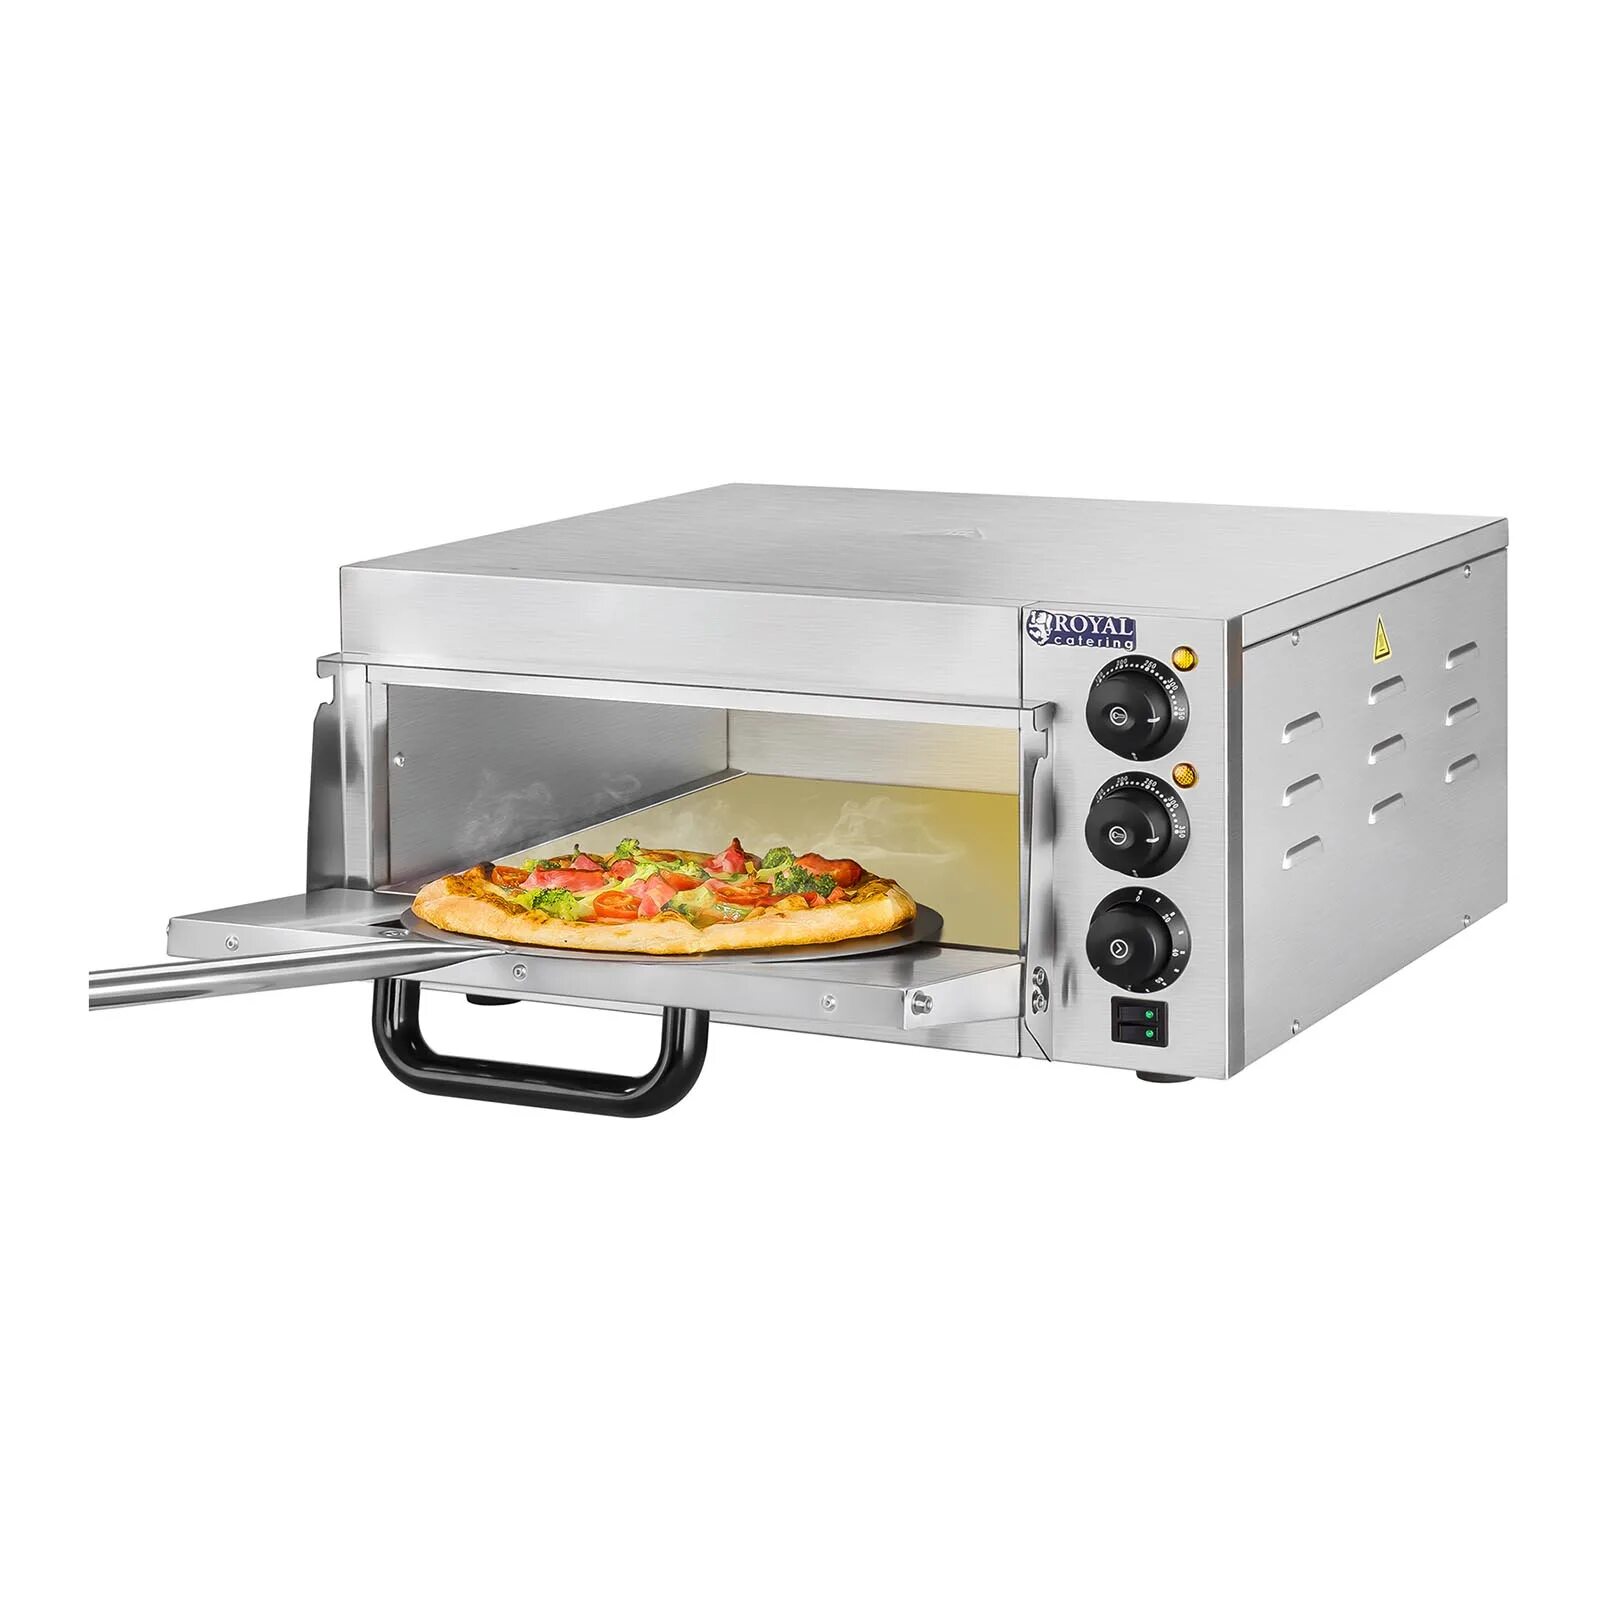 Печь для пиццы SGS po50. (Fimar, Италия) печь электрическая для пиццы с 2 камерами, 4 термостатами,. Печь электрическая для пиццы Hendi Kitchen line 4 2010 г. Пицца печь электрическая 380 одноярусная. Купить духовку для пиццы